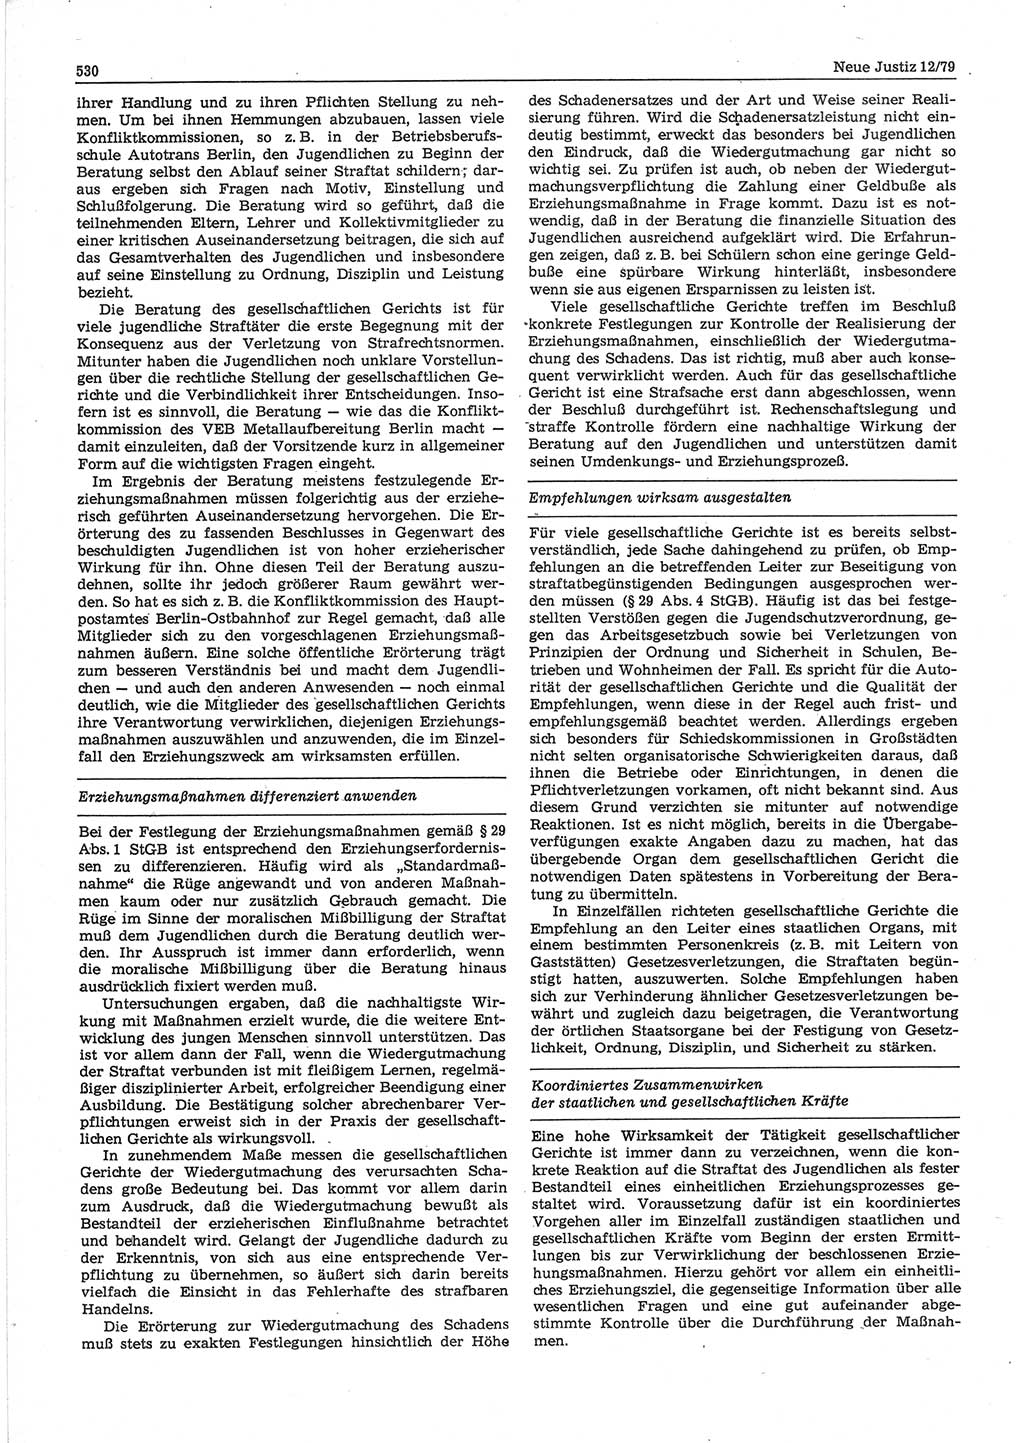 Neue Justiz (NJ), Zeitschrift für sozialistisches Recht und Gesetzlichkeit [Deutsche Demokratische Republik (DDR)], 33. Jahrgang 1979, Seite 530 (NJ DDR 1979, S. 530)